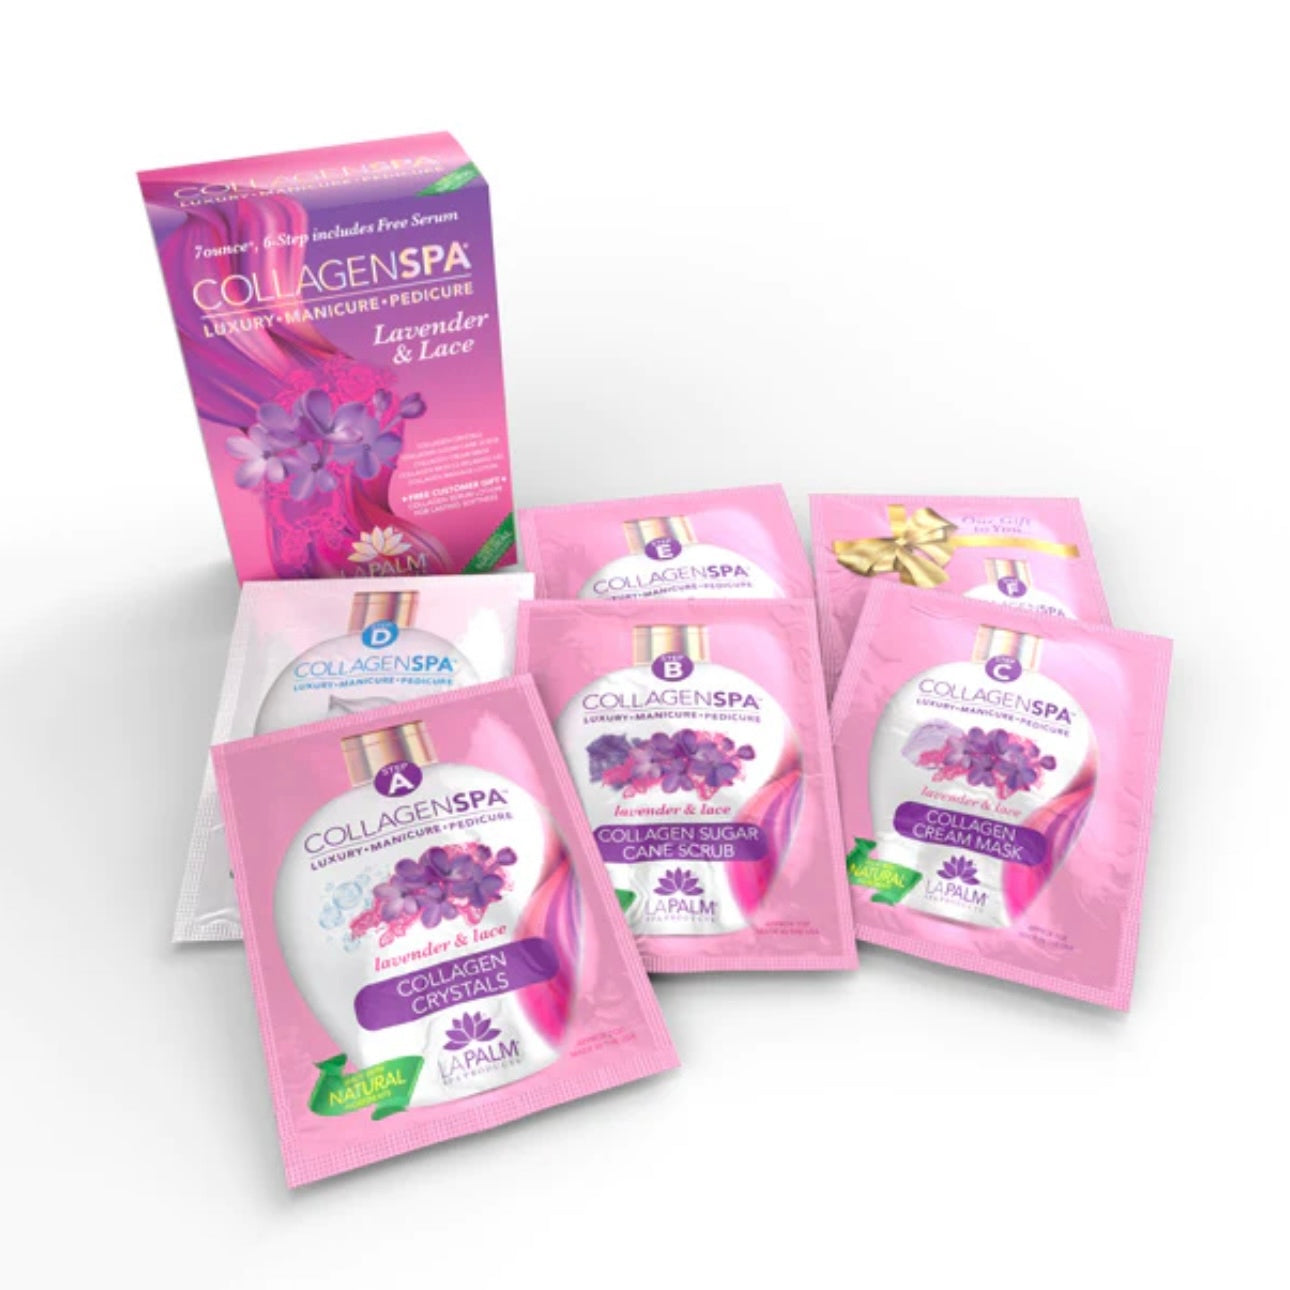 LaPalm Collagen Spa: 6 Step Kit - Lavender & Lace